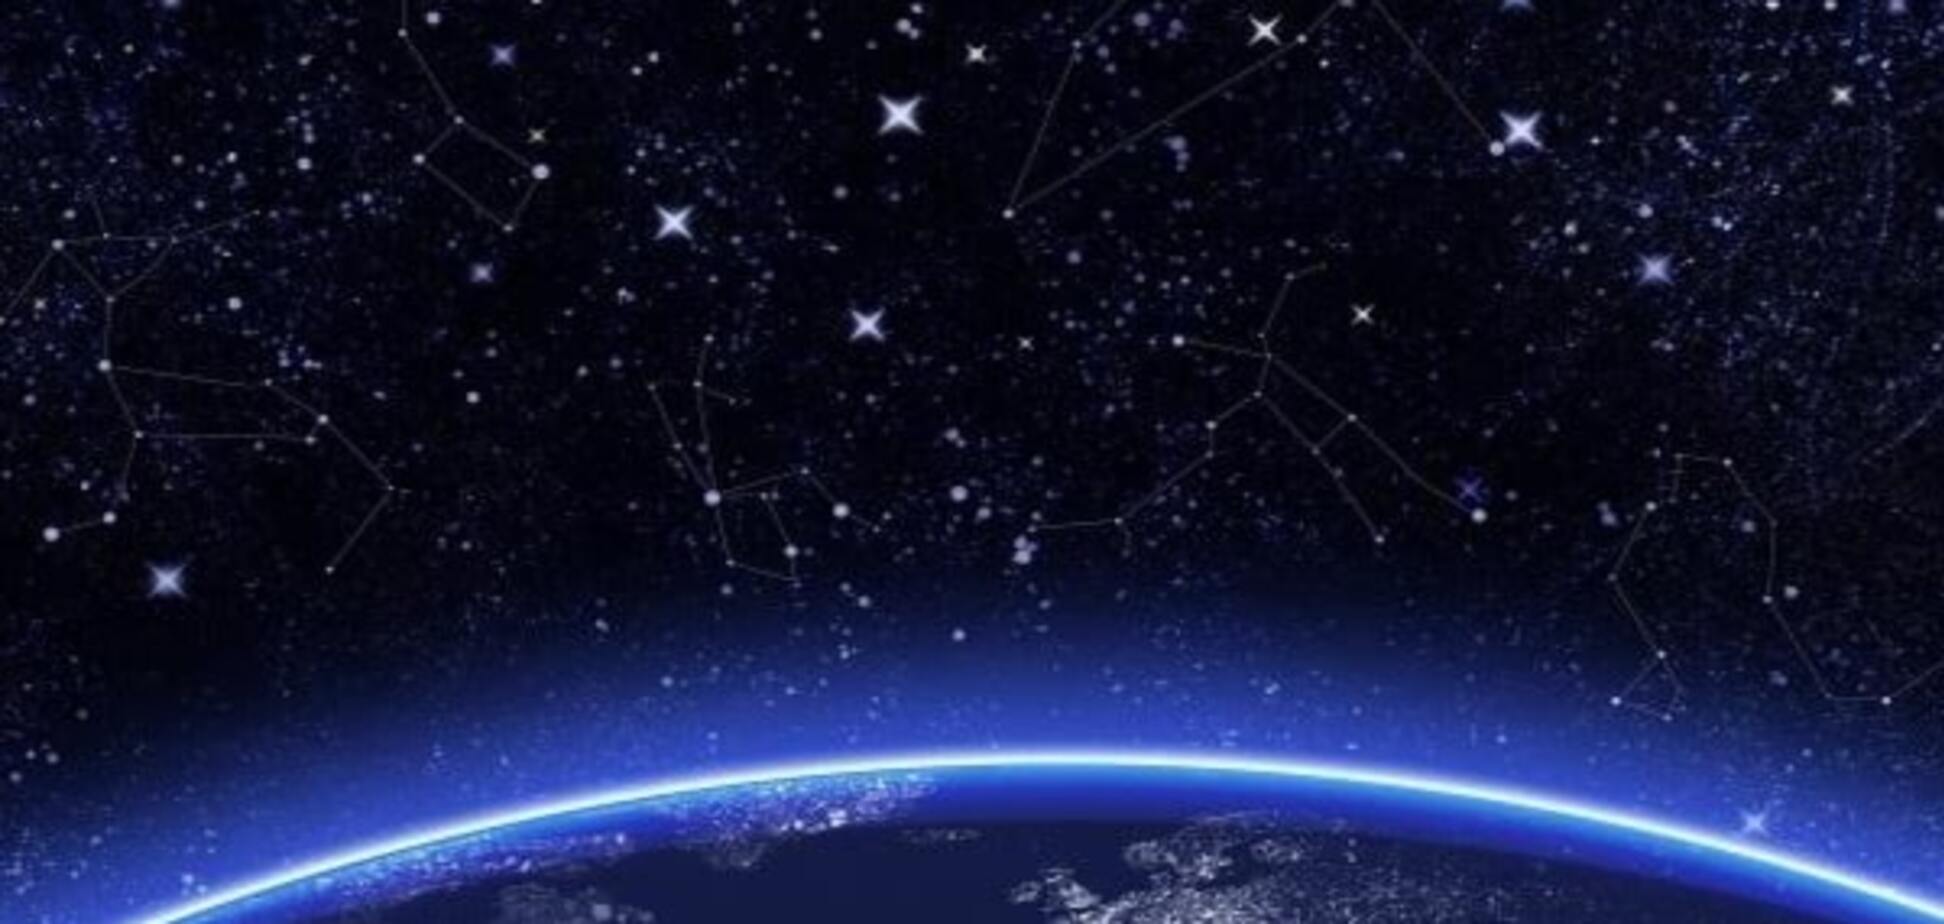 Звездопад 2016: самое красочное космическое 'шоу' года